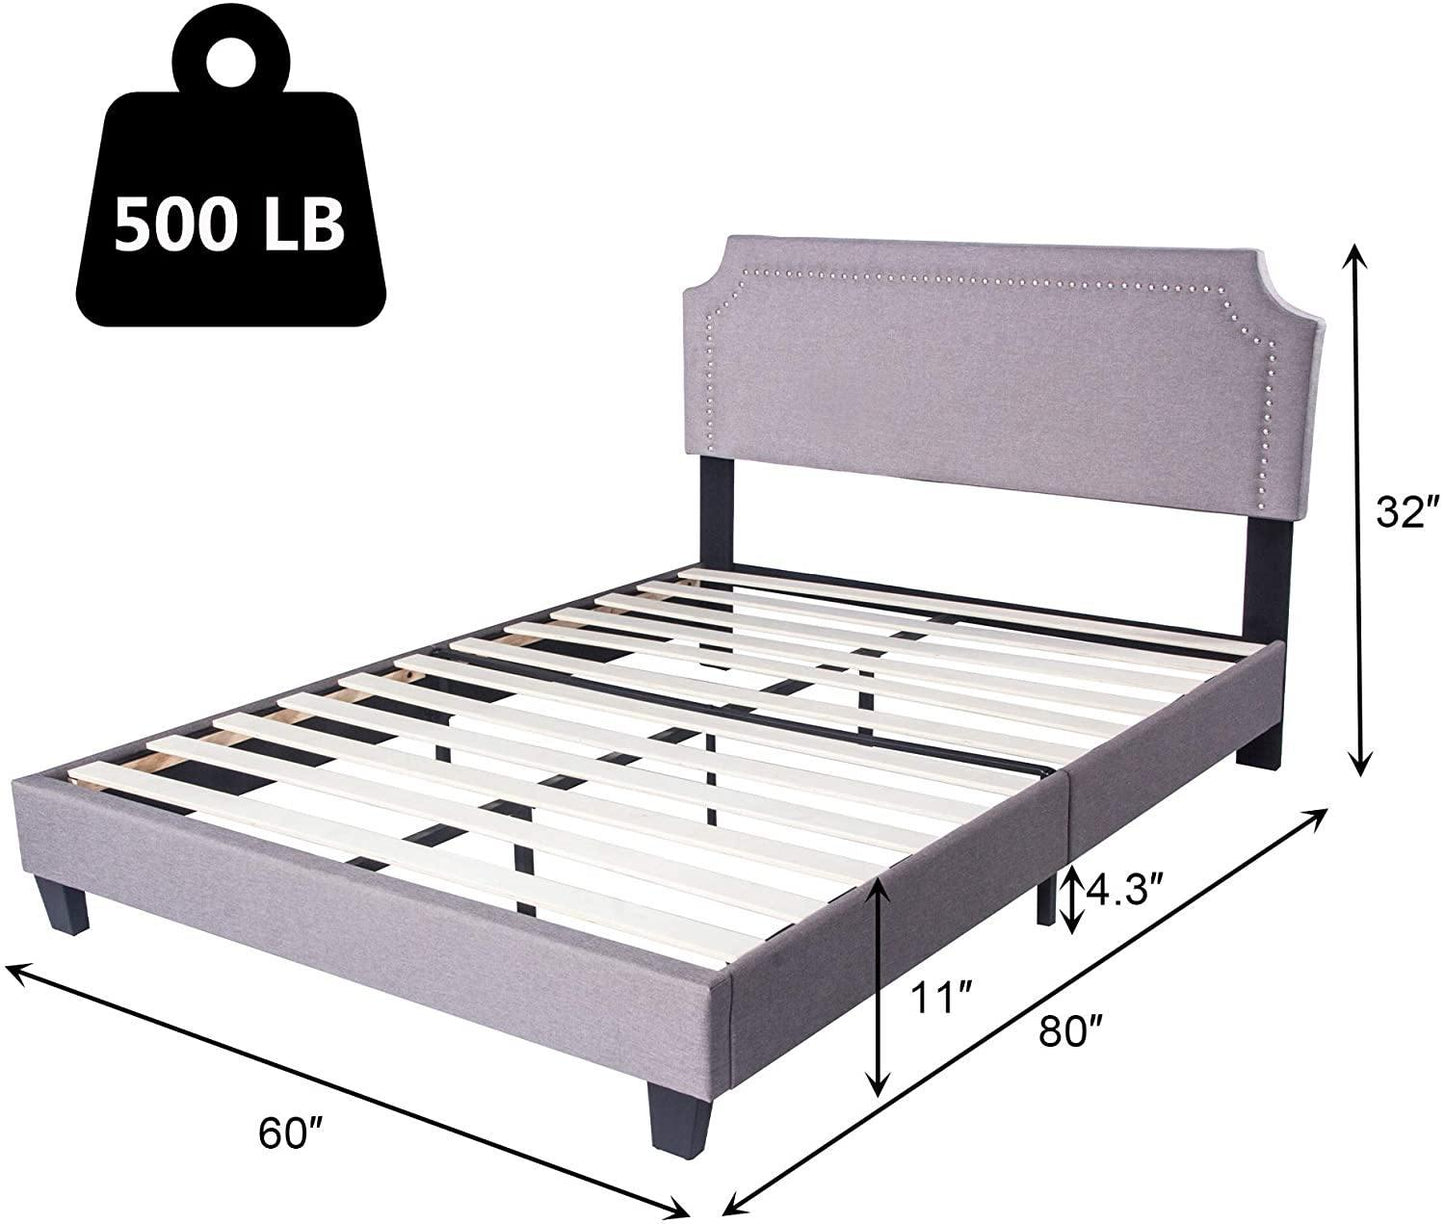 60" Platform Bed Frame Queen Upholstered Headboard Wood Slat Support Metal Frame Heavy Duty Bed Fram